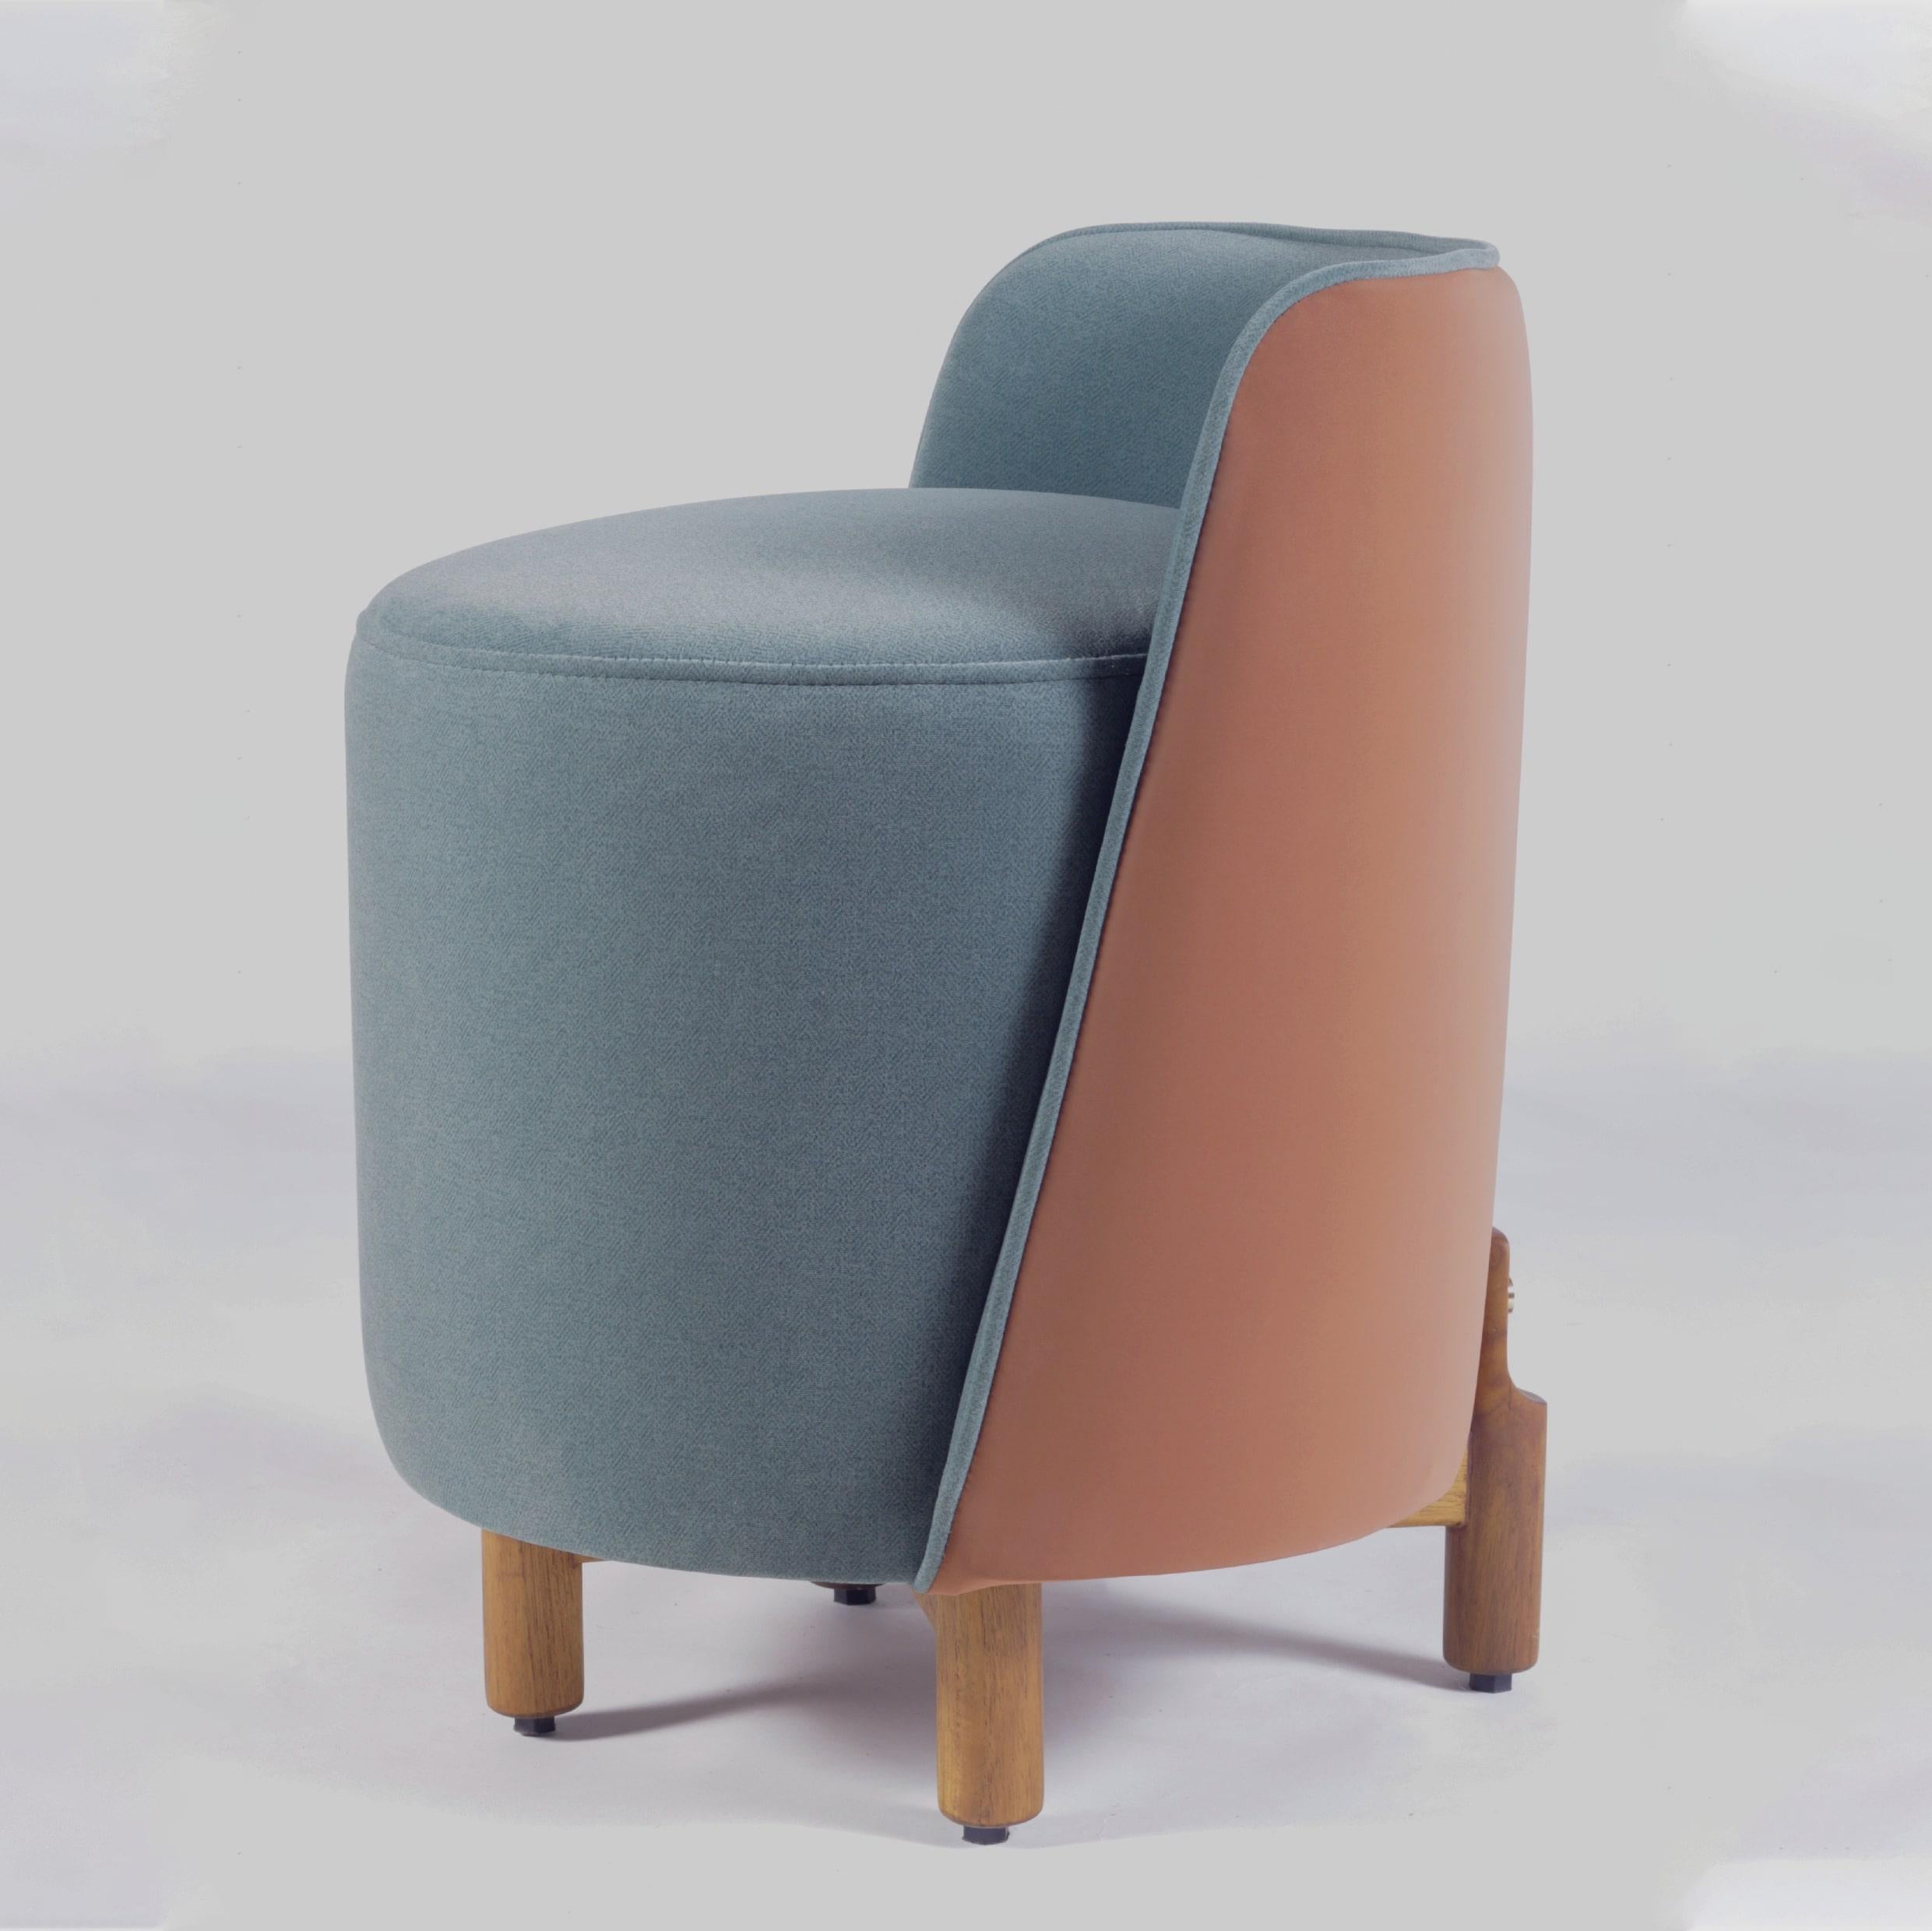 Le pouf Minpuff est un complément moderne et ludique à tout espace. Fabriqué avec des pieds en bois massif, une assise coussinée et un dossier, le Minpuff est un perchoir parfait pour s'asseoir rapidement ou comme pouf. Le rembourrage luxueux crée